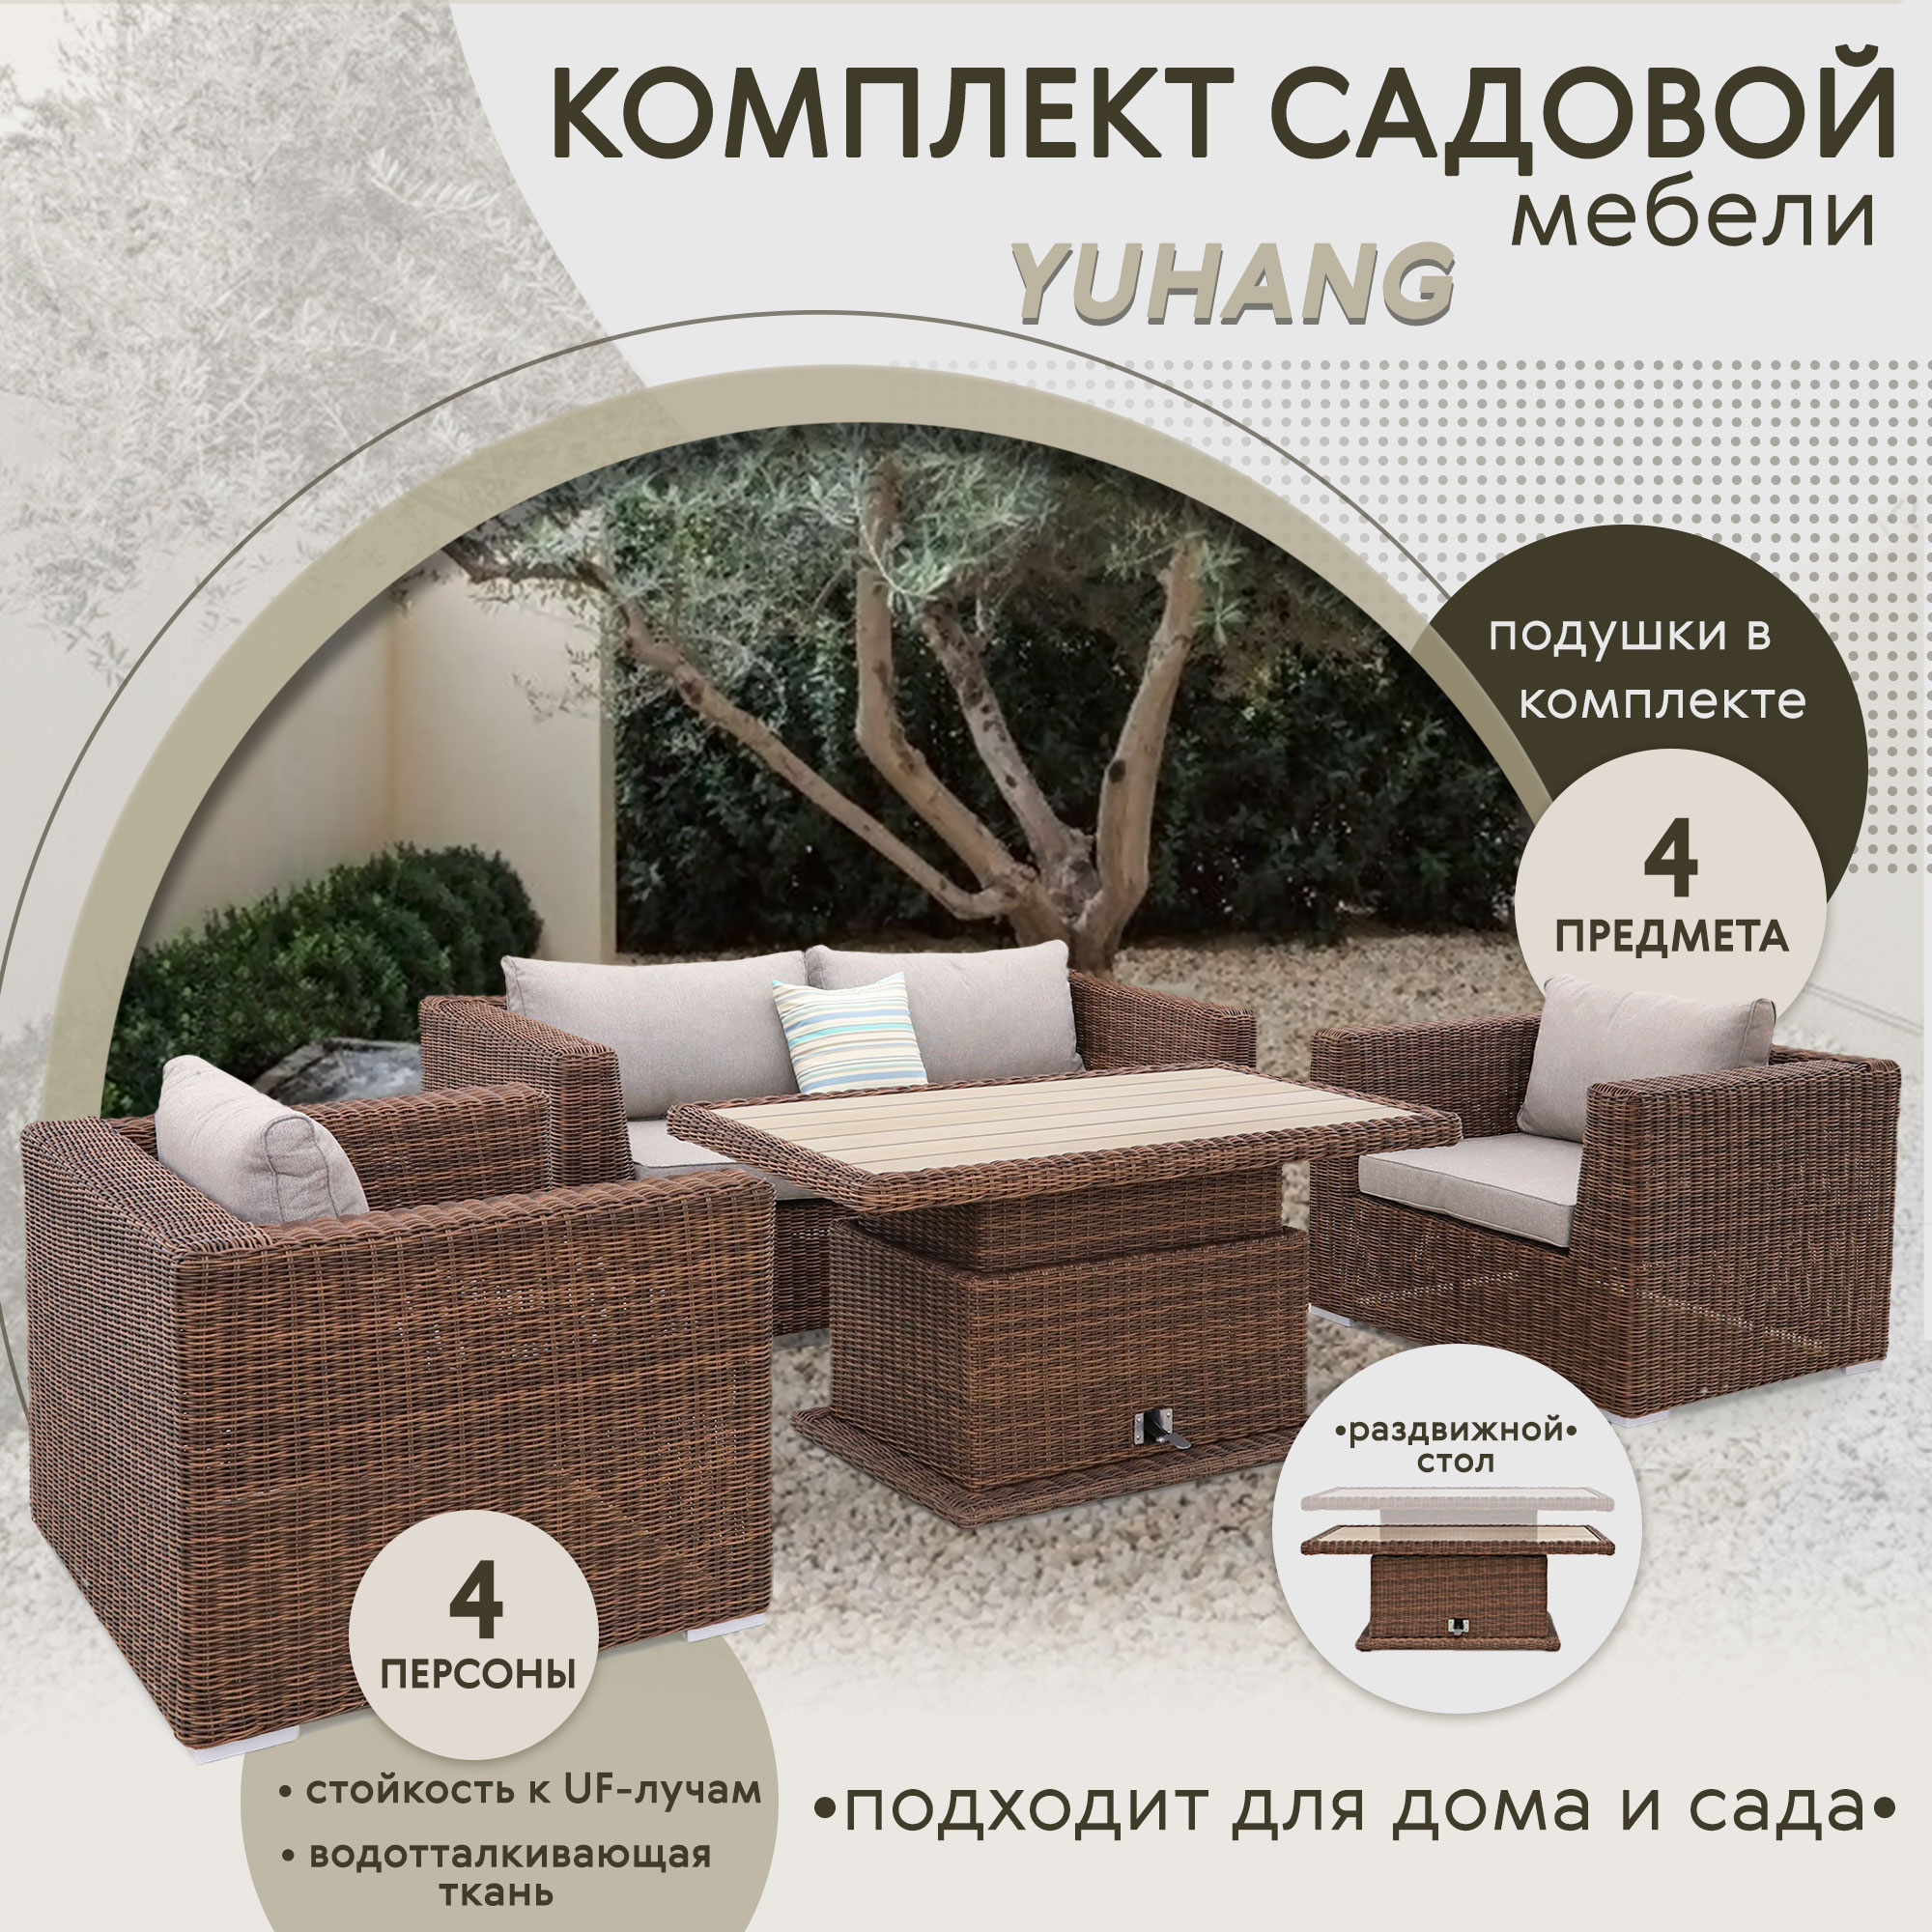 Комплект мебели Yuhang коричневый с серым 4 предмета, цвет бежевый, размер 205х98х80 - фото 2